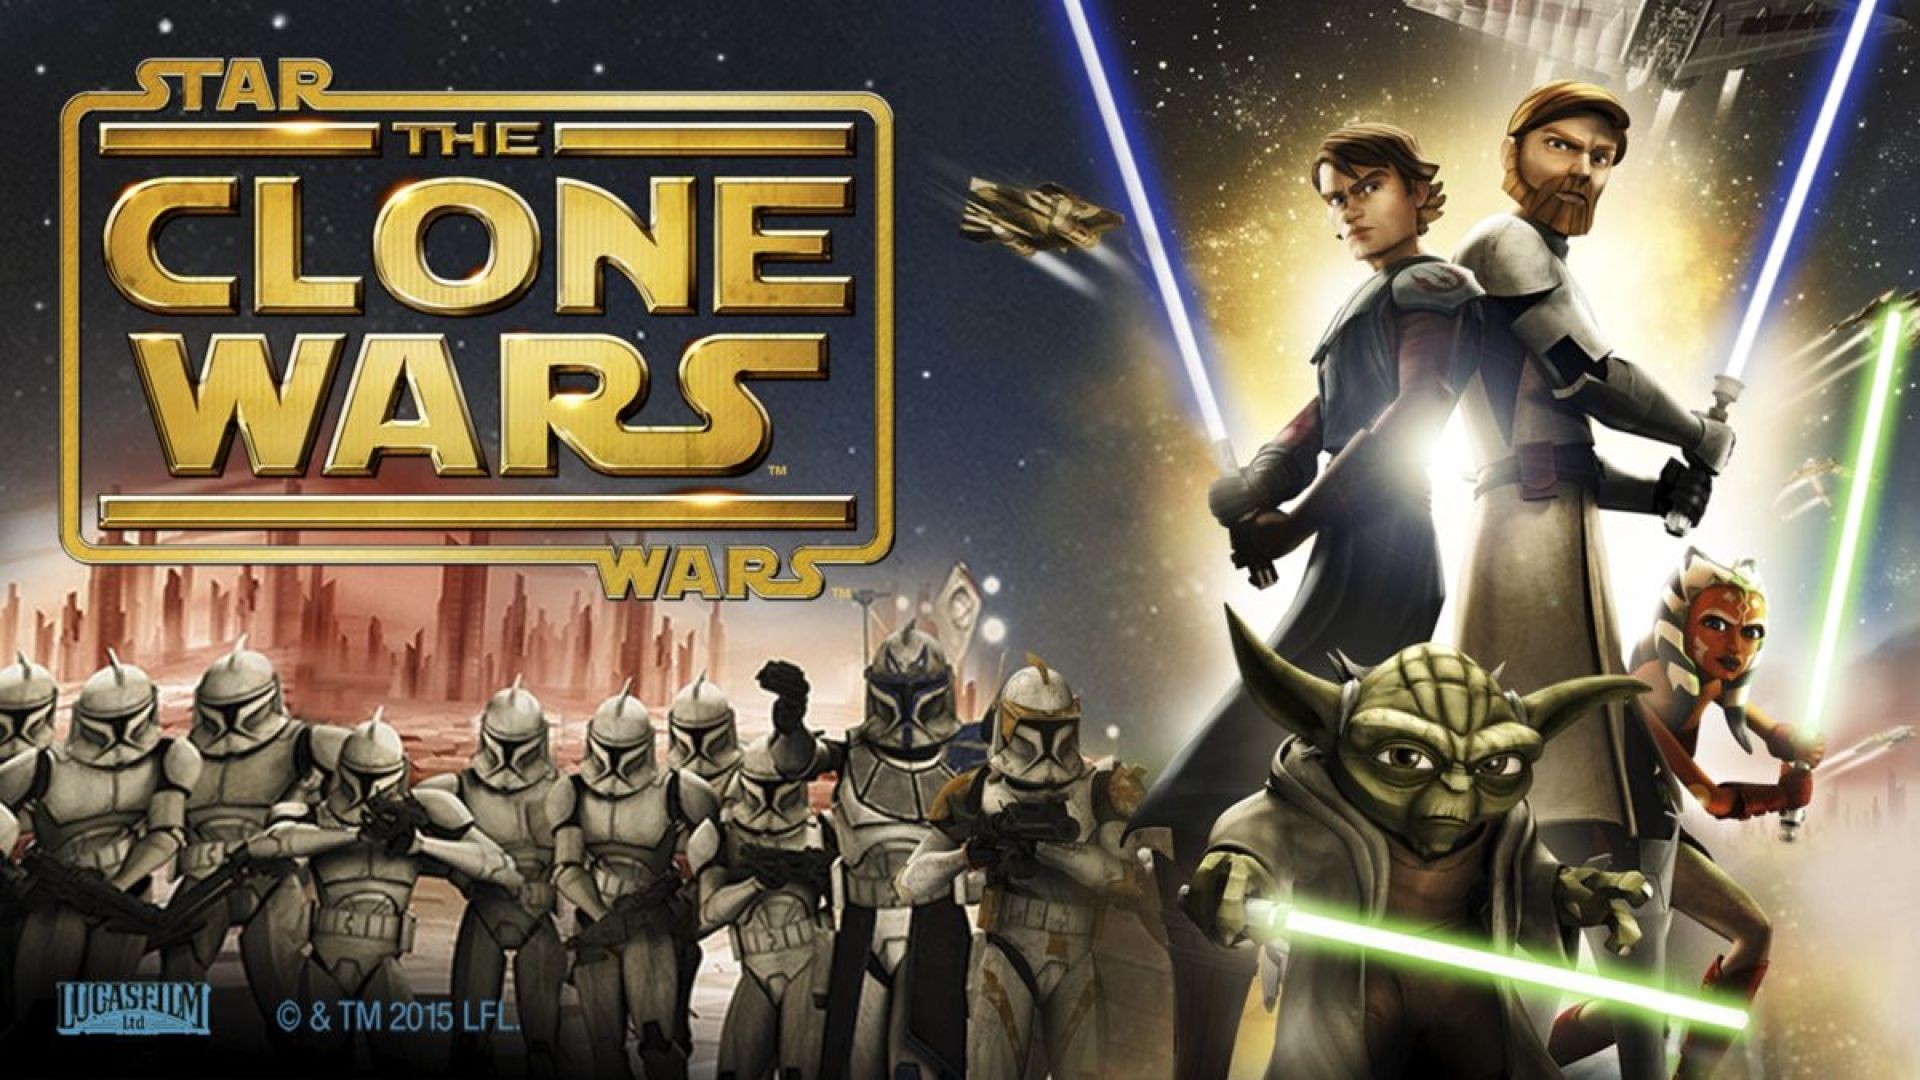 ⁣ვარსკვლავური ომები: კლონების ომი / Star Wars: The Clone Wars (ქართულად) (2008)